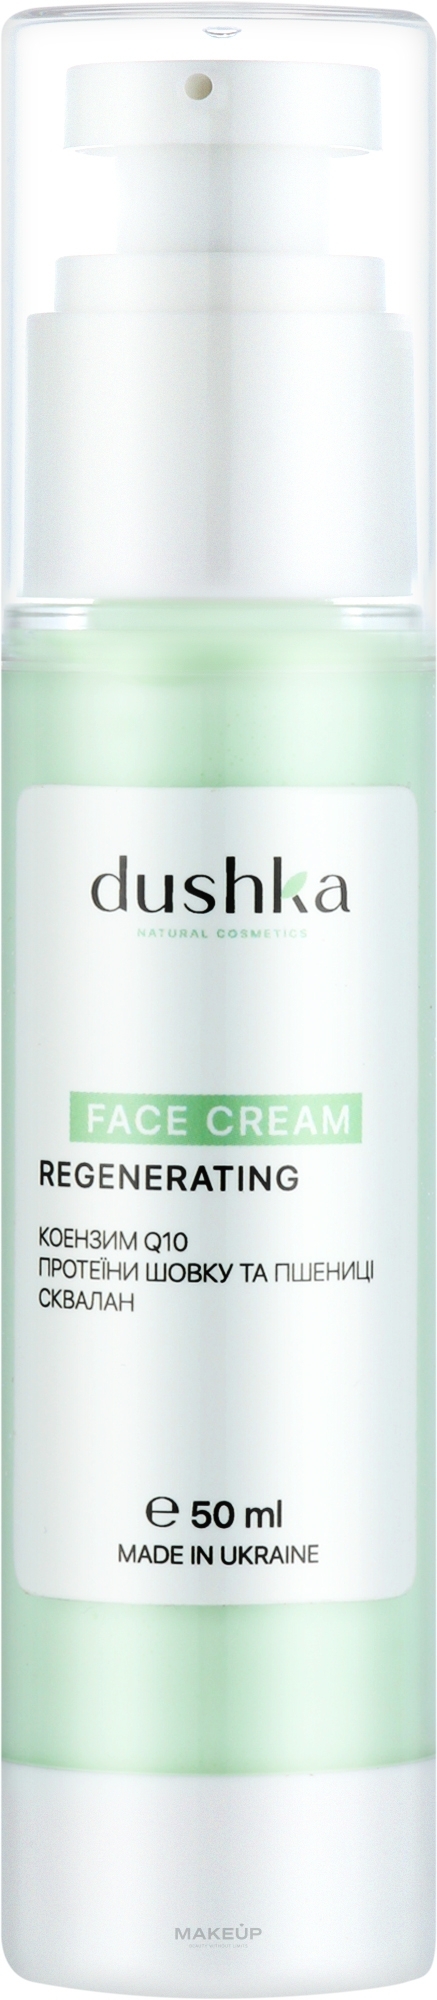 Крем для лица регенерирующий - Dushka Face Cream Regenerating — фото 50ml